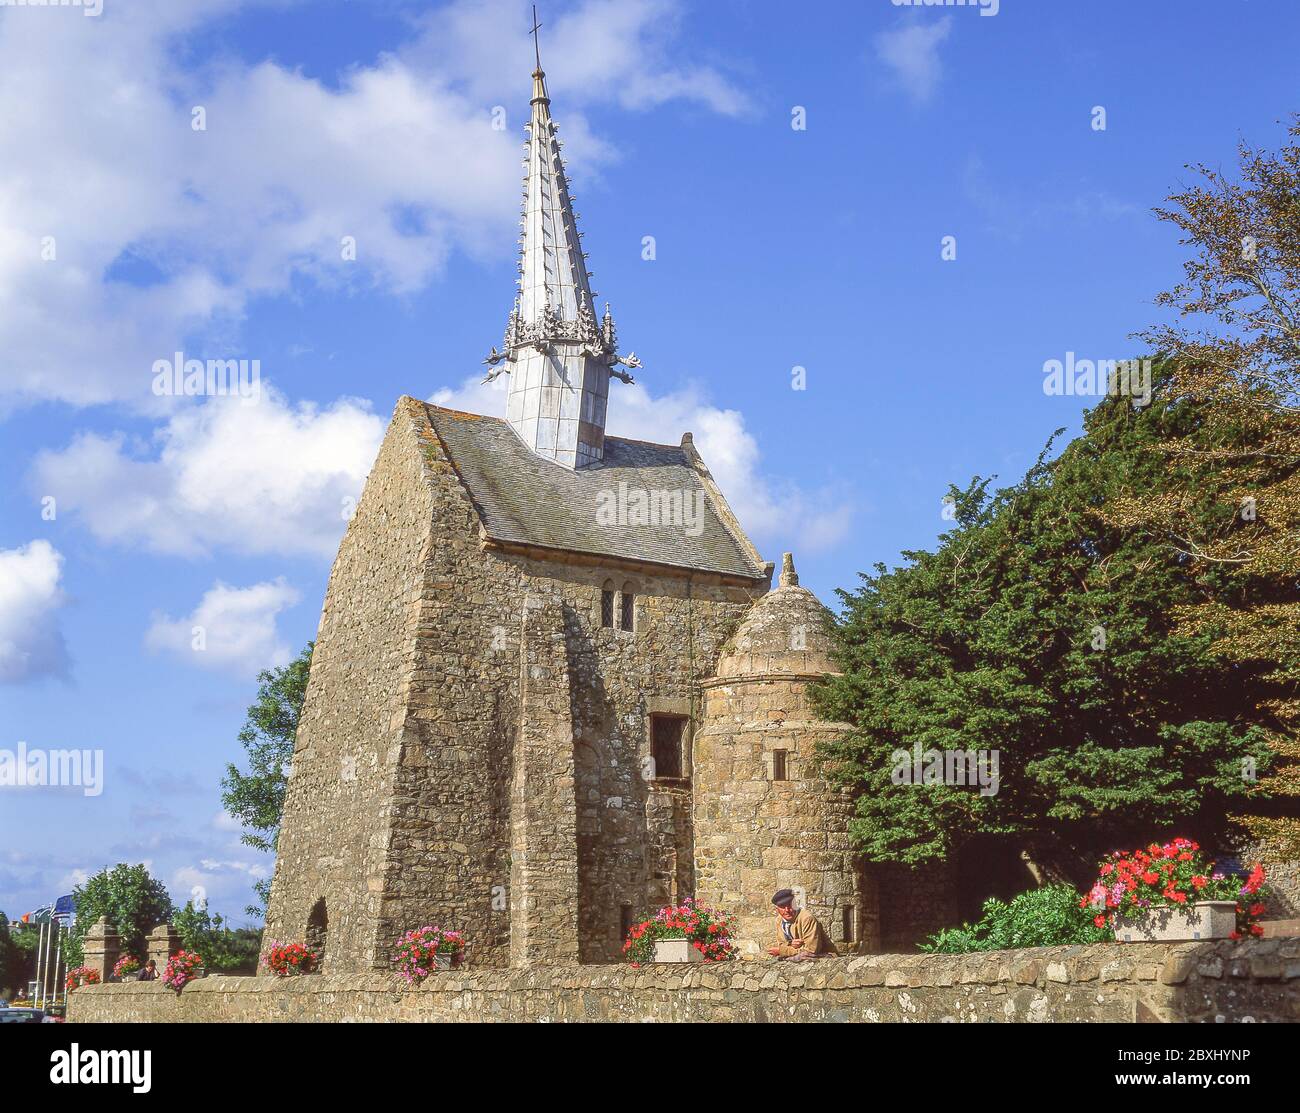 La Chapelle Saint Gonery, Plougrescant (Plougouskant), Côtes-d'Armor, Brittany, France Stock Photo